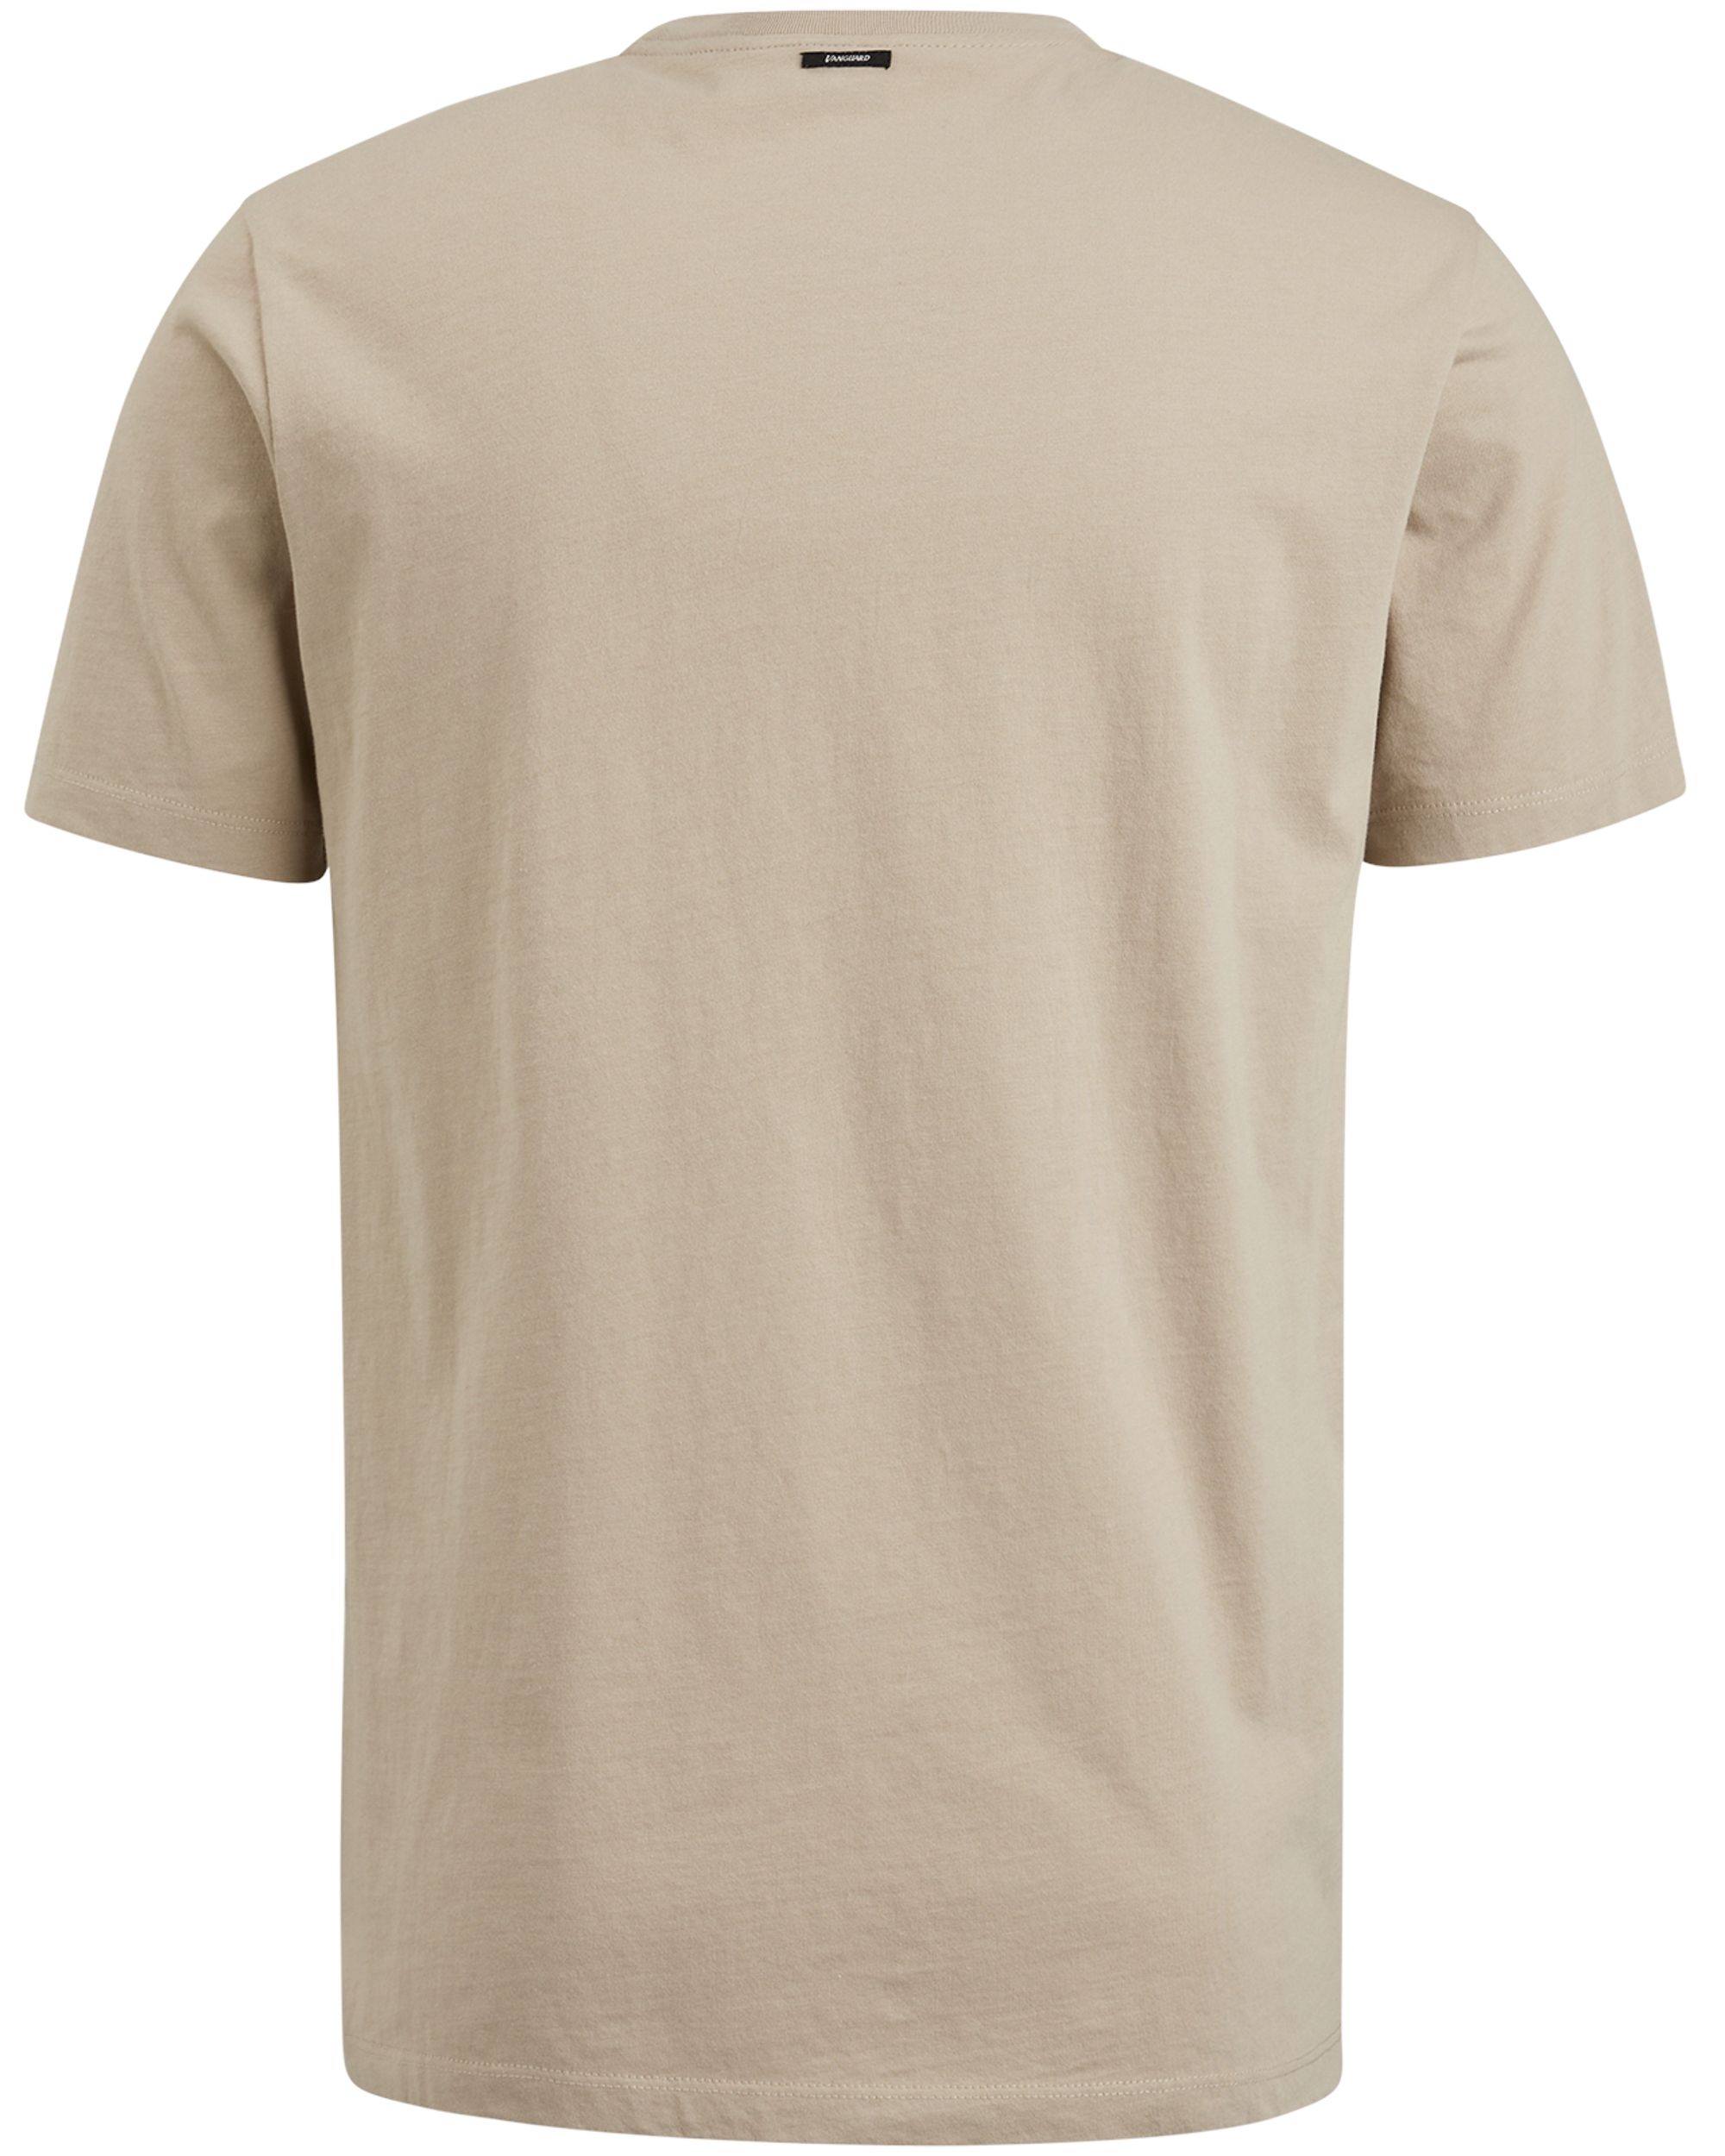 Vanguard T-shirt KM Bruin 088504-001-L